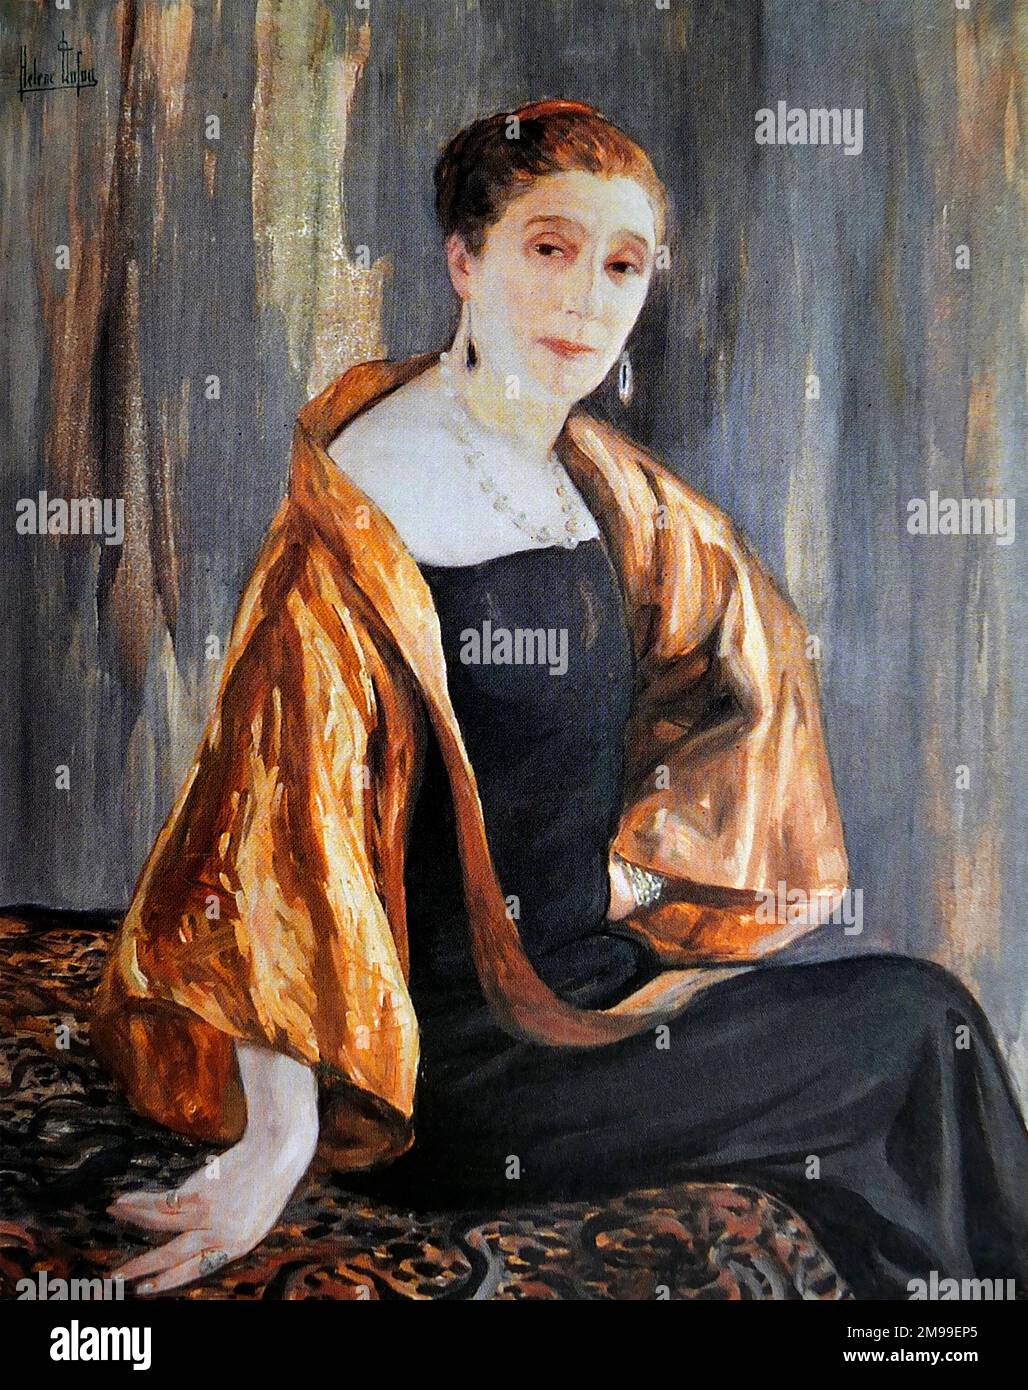 Jeanne Lanvin. Ritratto del fashion designer di alta moda Jeanne-Marie  Lanvin (1867-1946), dipinto di Clémentine-Hélène Dufau, 1925 Foto stock -  Alamy